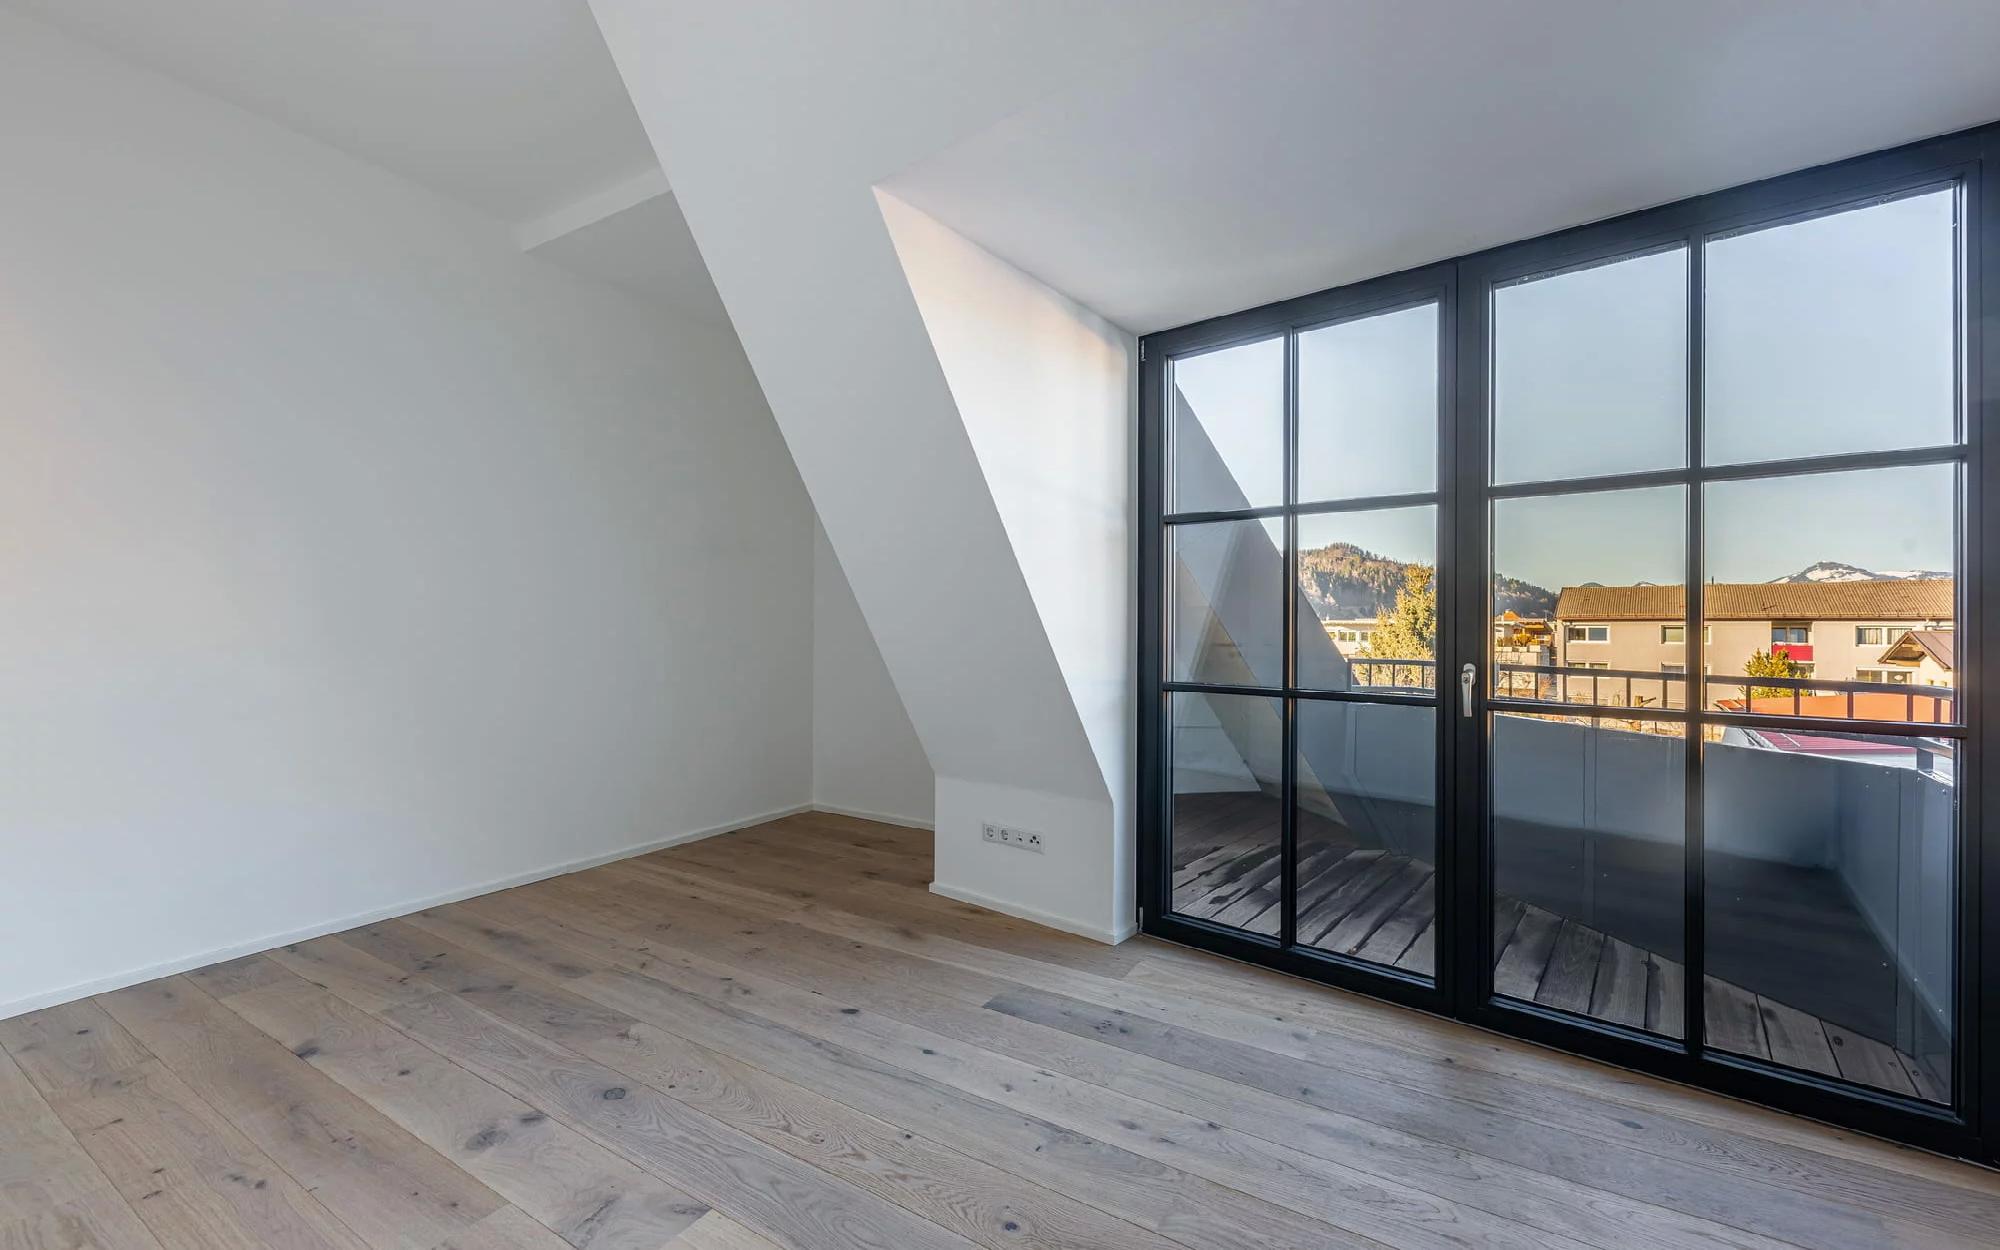 Immobilien - Panorama-Dachgeschoss-Wohnung in Kufstein, Kufstein